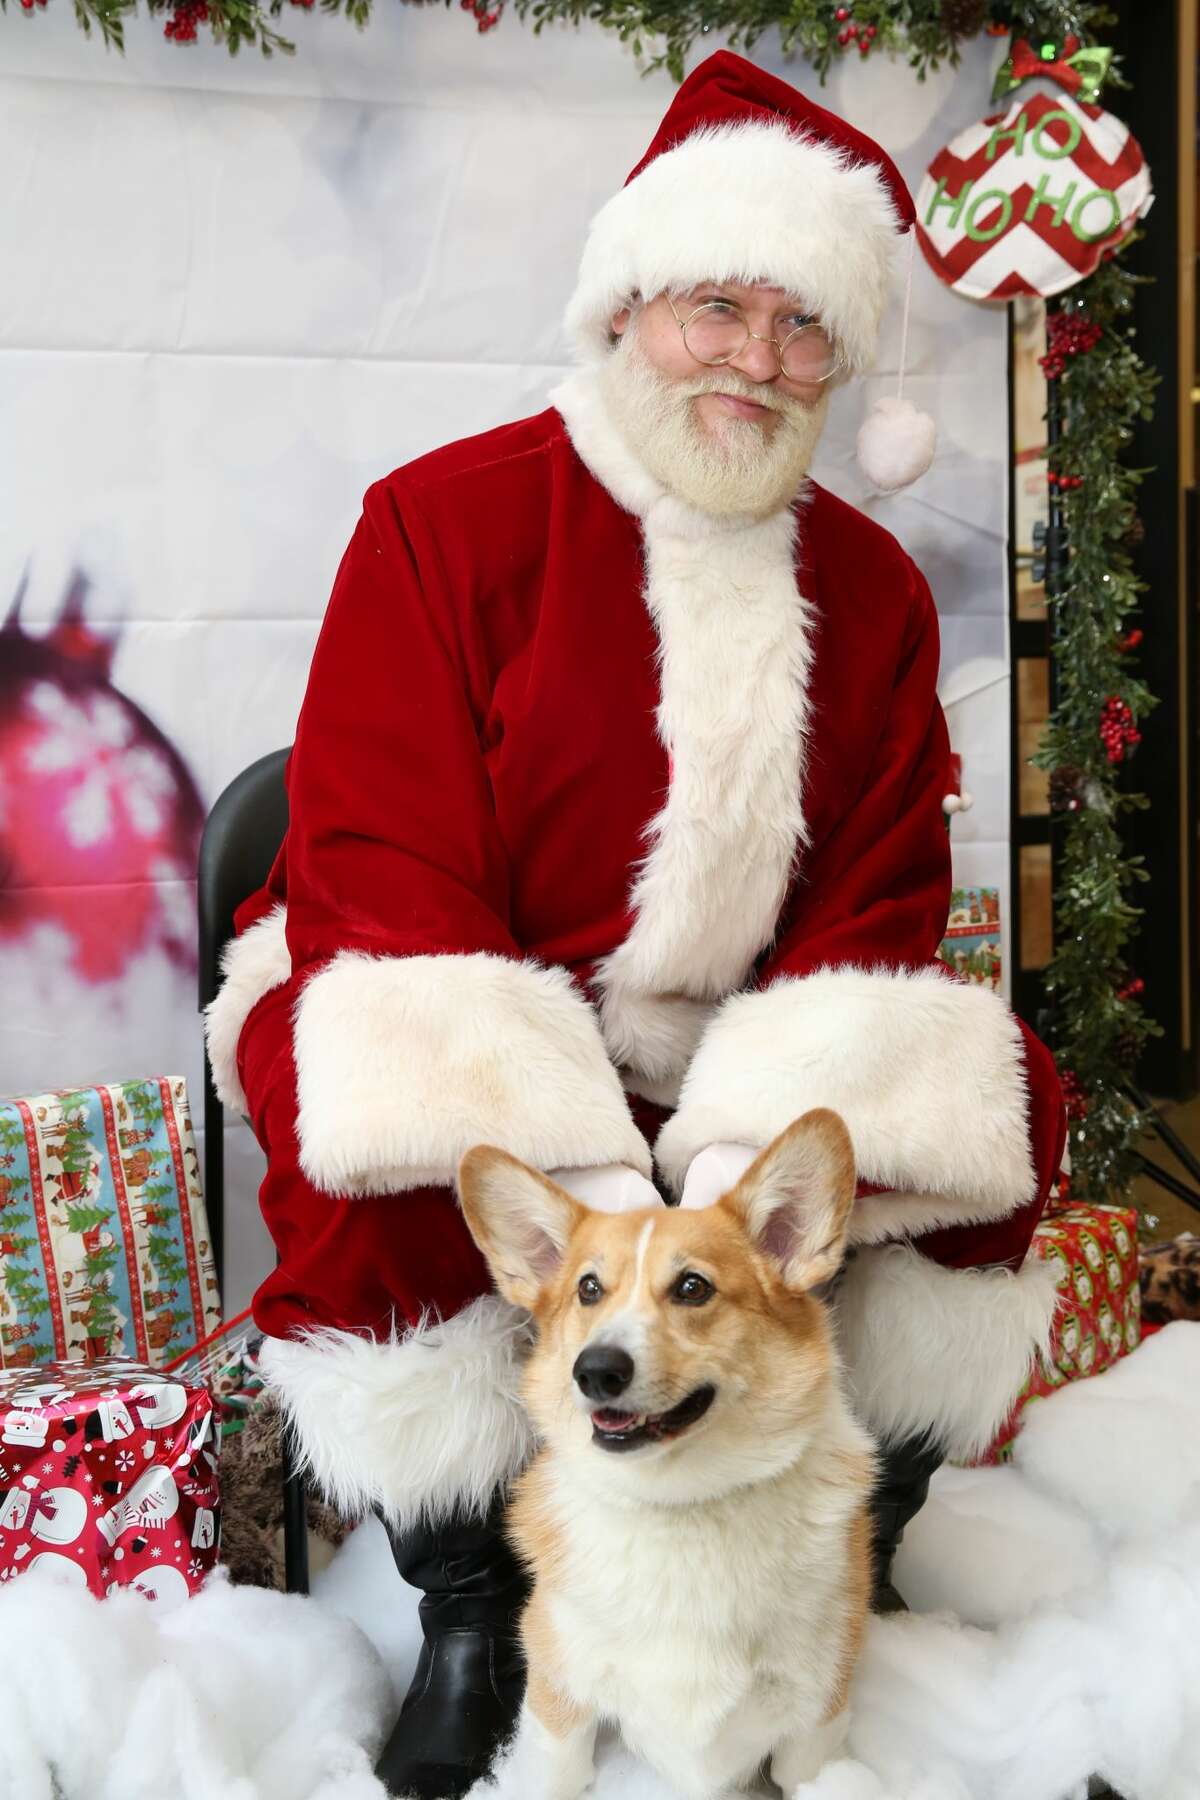 PetSmart shares its hilarious, adorable pet photos with Santa Claus